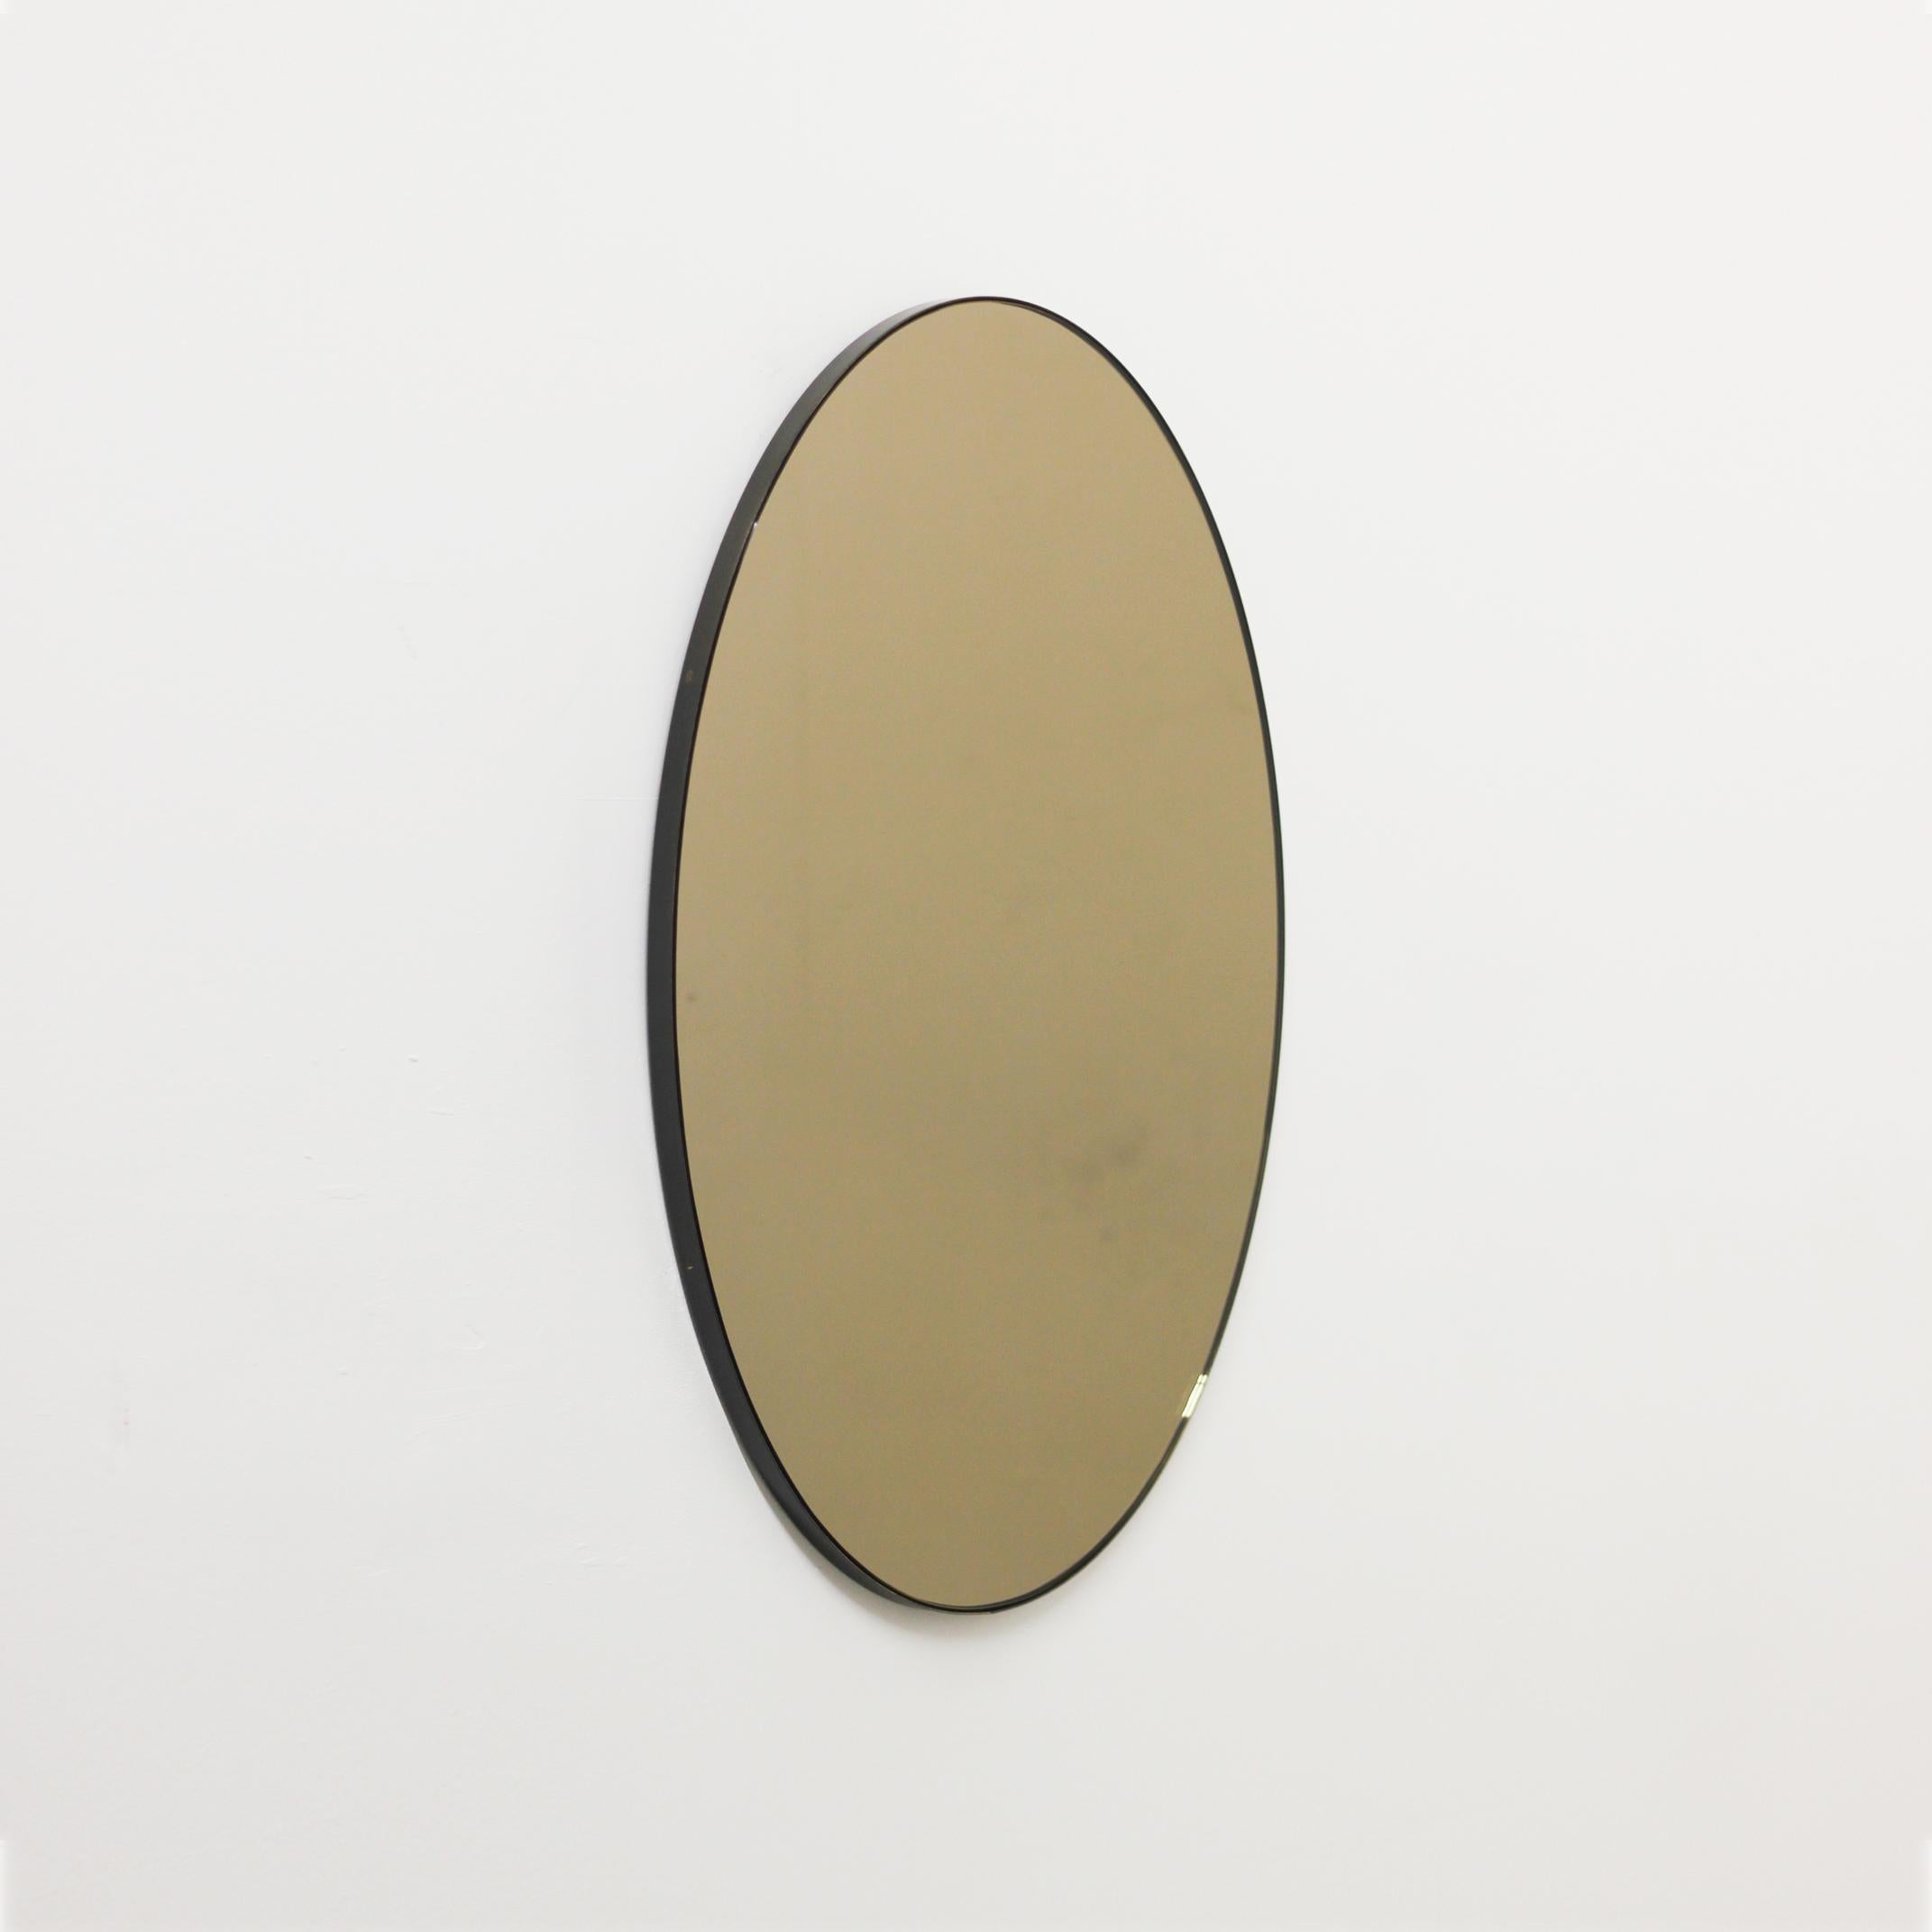 Zeitgenössischer ovaler, bronzefarben getönter Spiegel mit einem eleganten, bronzefarben patinierten Messingrahmen. Entworfen und handgefertigt in London, UK.

Dieser Spiegel ist vollständig anpassbar. Der Versand erfolgt weltweit sicher und